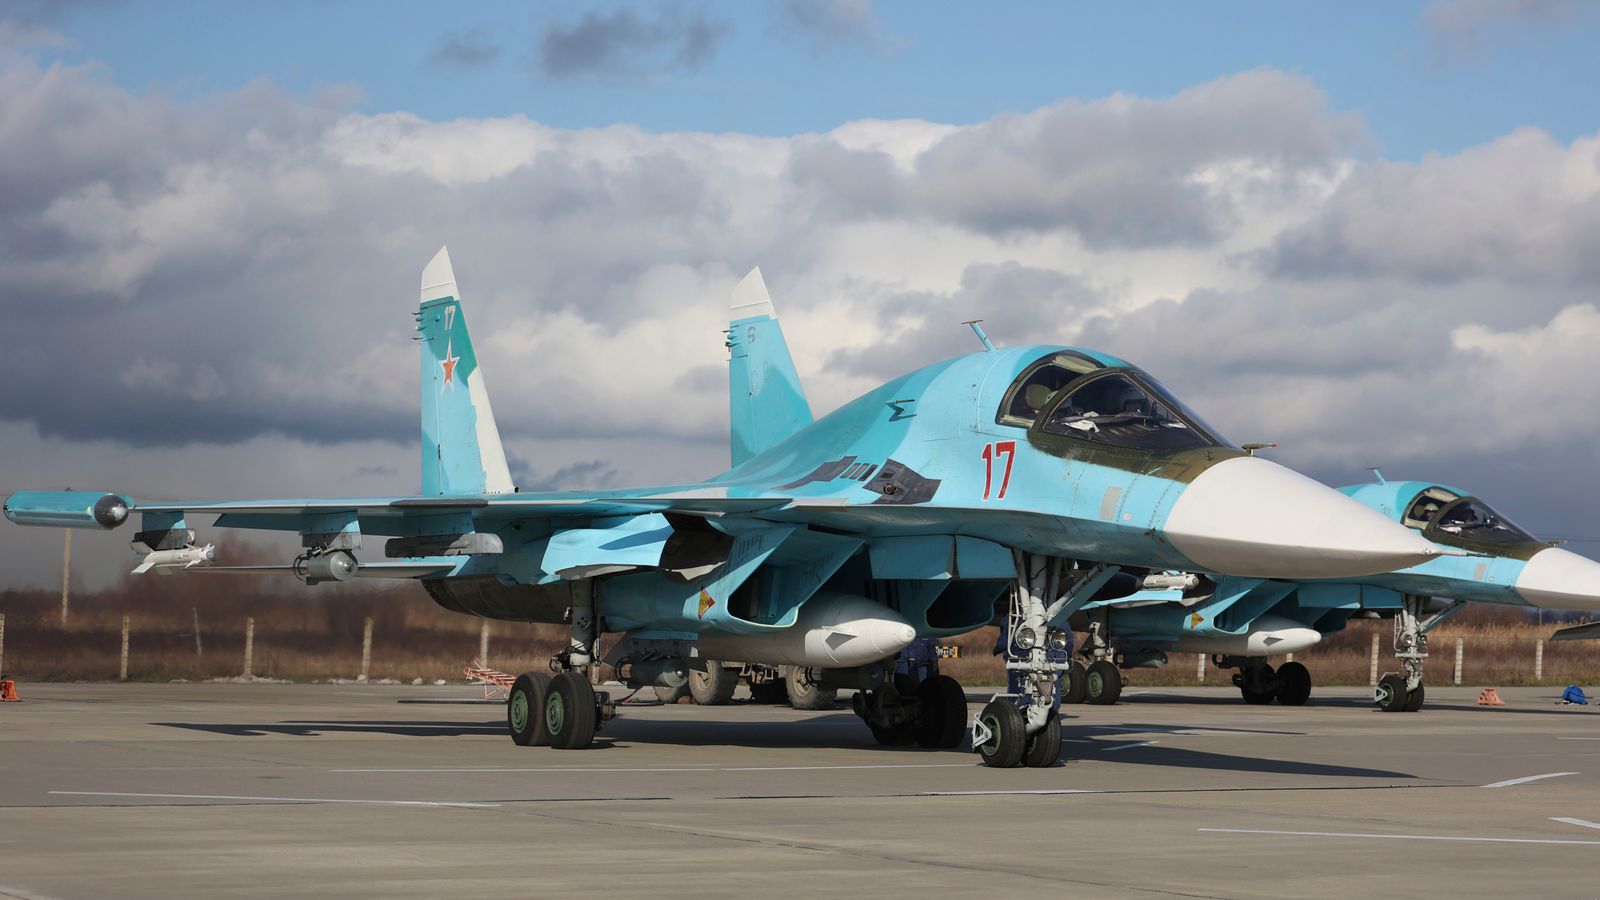 Ukrainische Streitkräfte greifen Militärflughafen in Russland an, während Putins RAF „anhaltend hart durchgreift“ |  Weltnachrichten